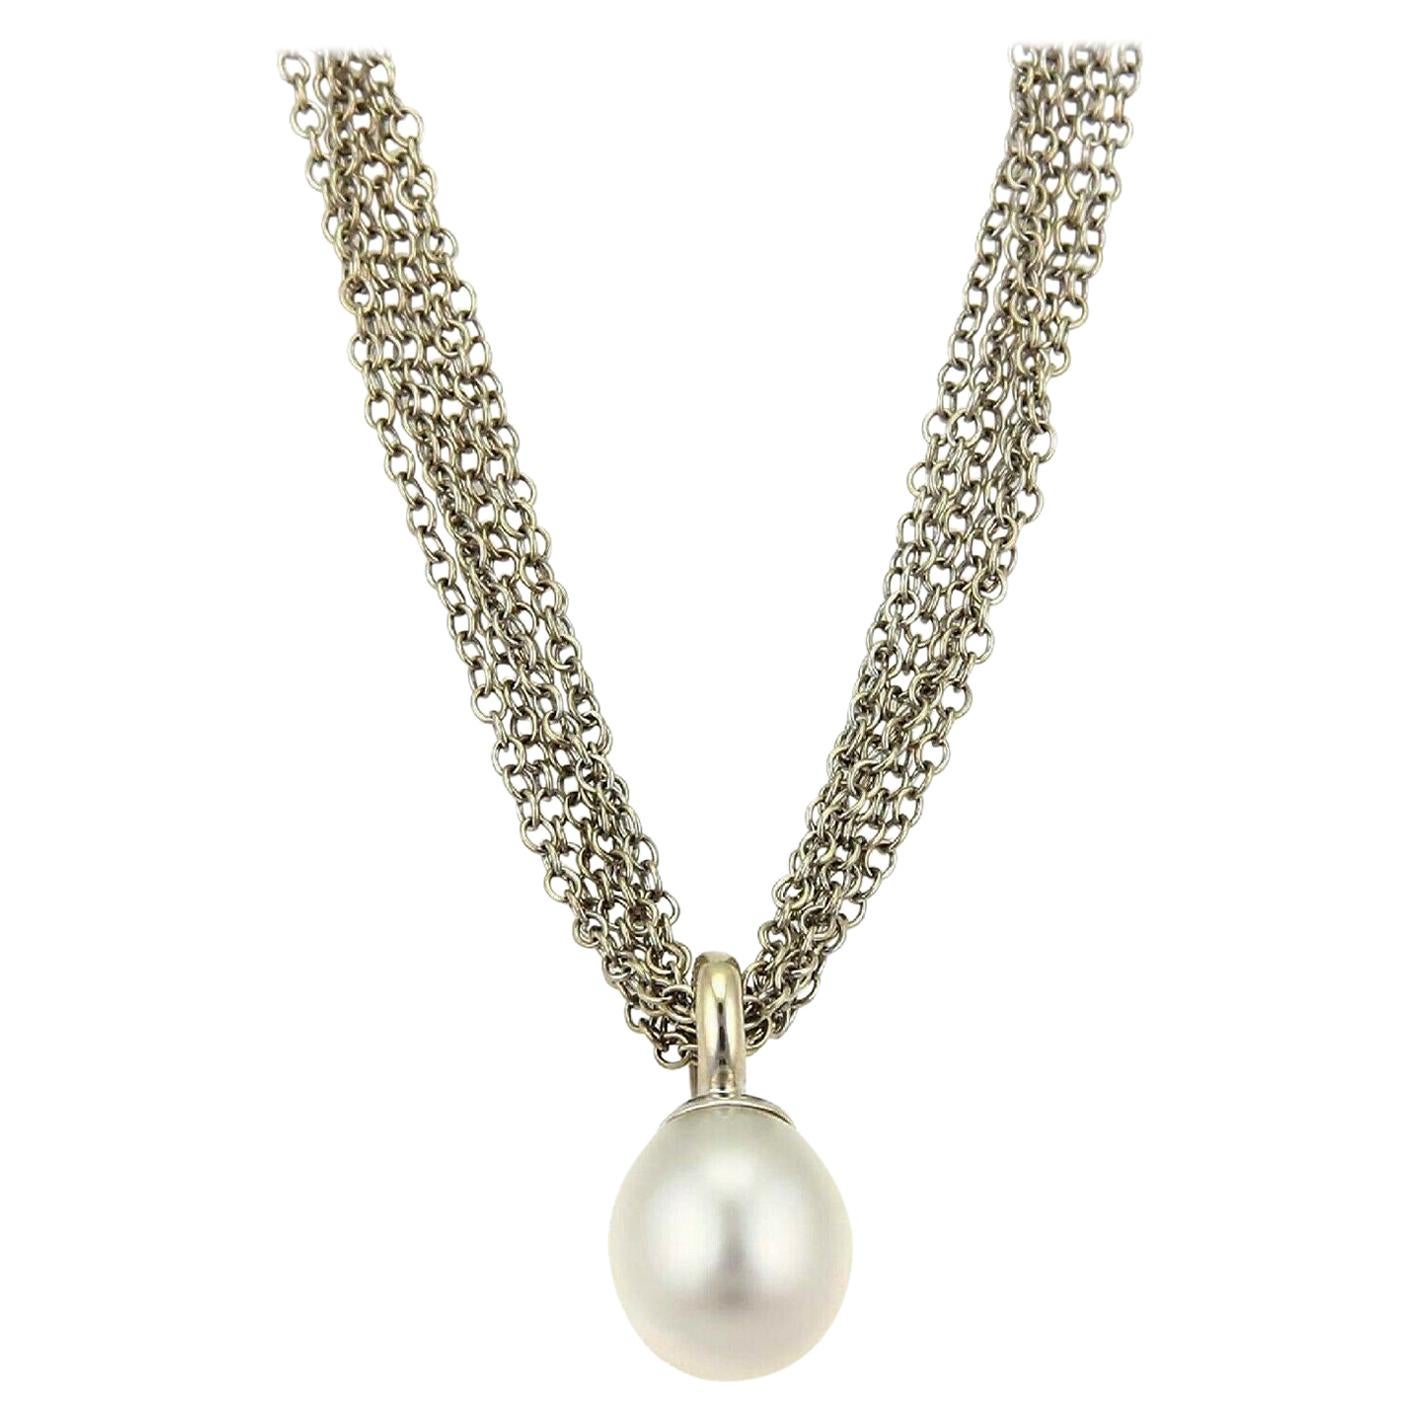 Tiffany & Co. South Sea Pearl White Gold Multi-Chain Toggle Clasp Necklace